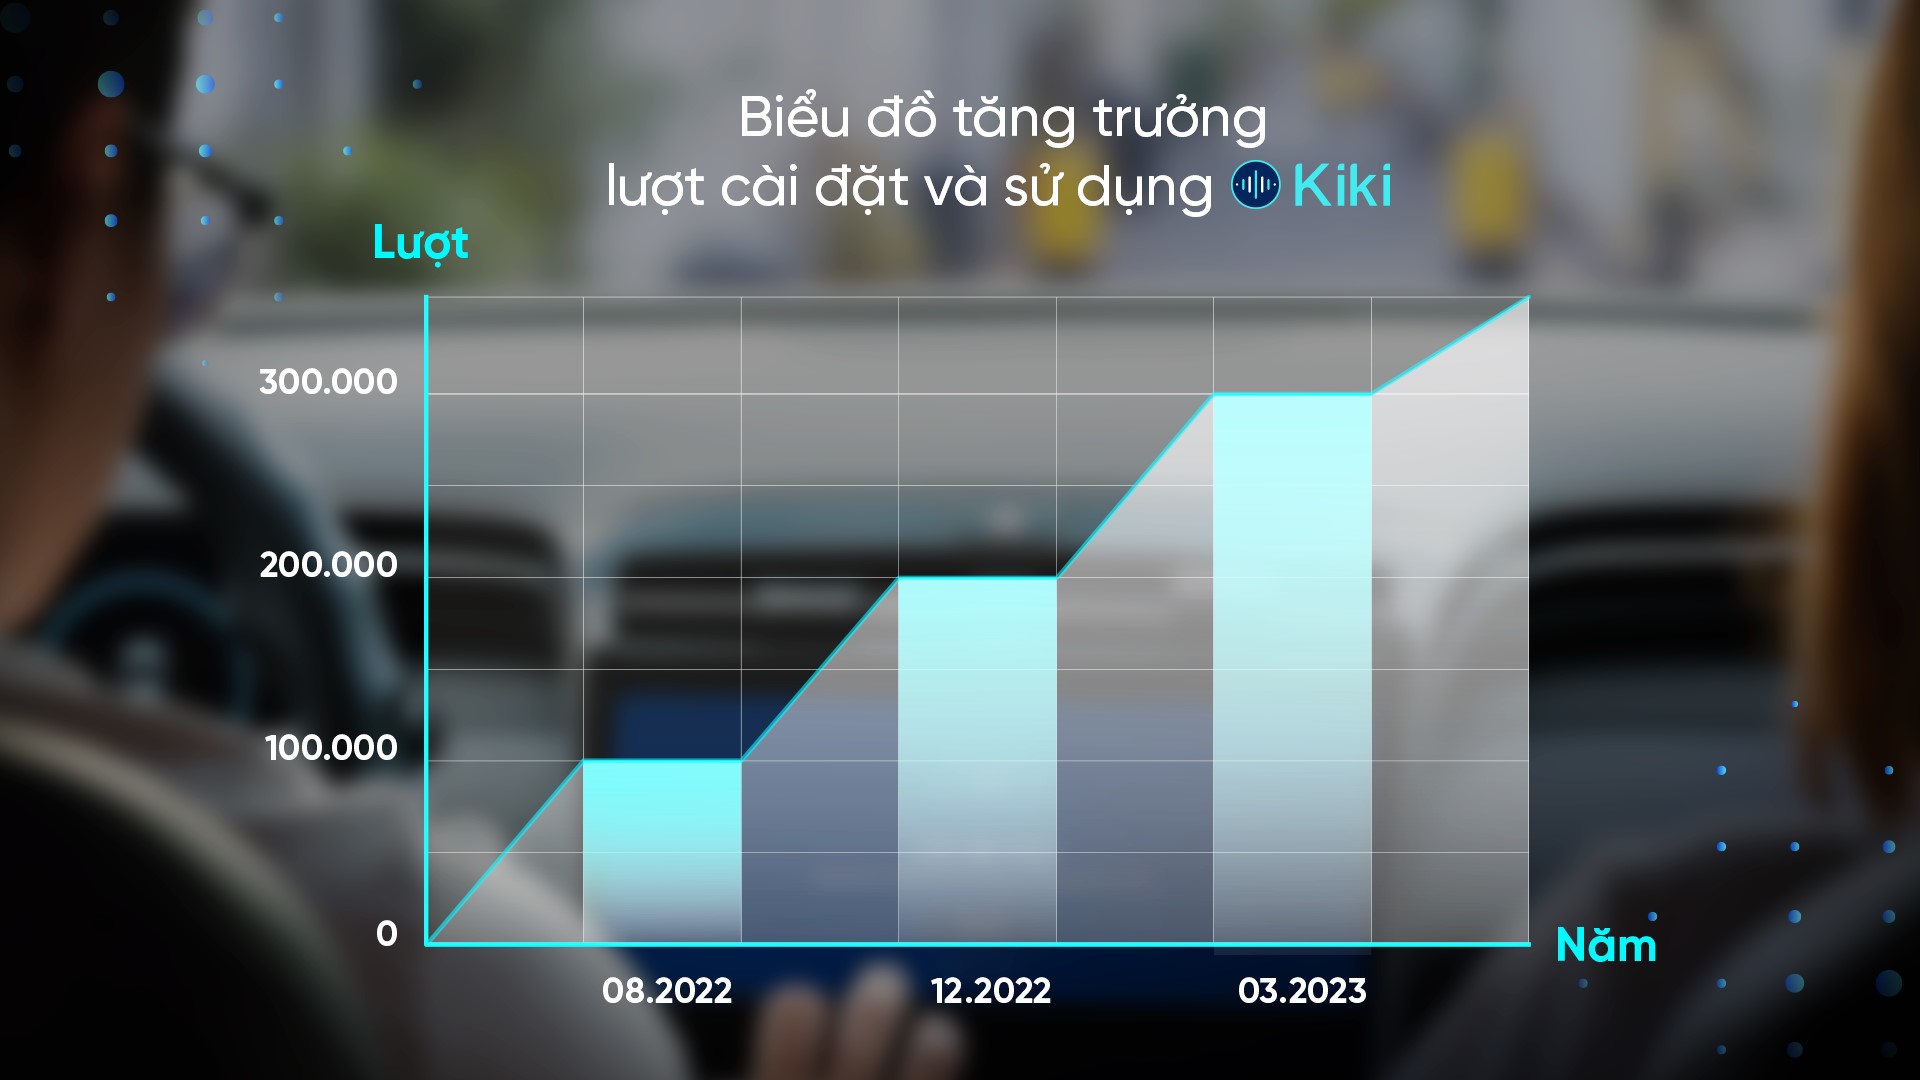 Trợ lý giọng nói Kiki cán mốc 300.000 lượt cài đặt, tăng trưởng 50% sau chưa đầy 3 tháng